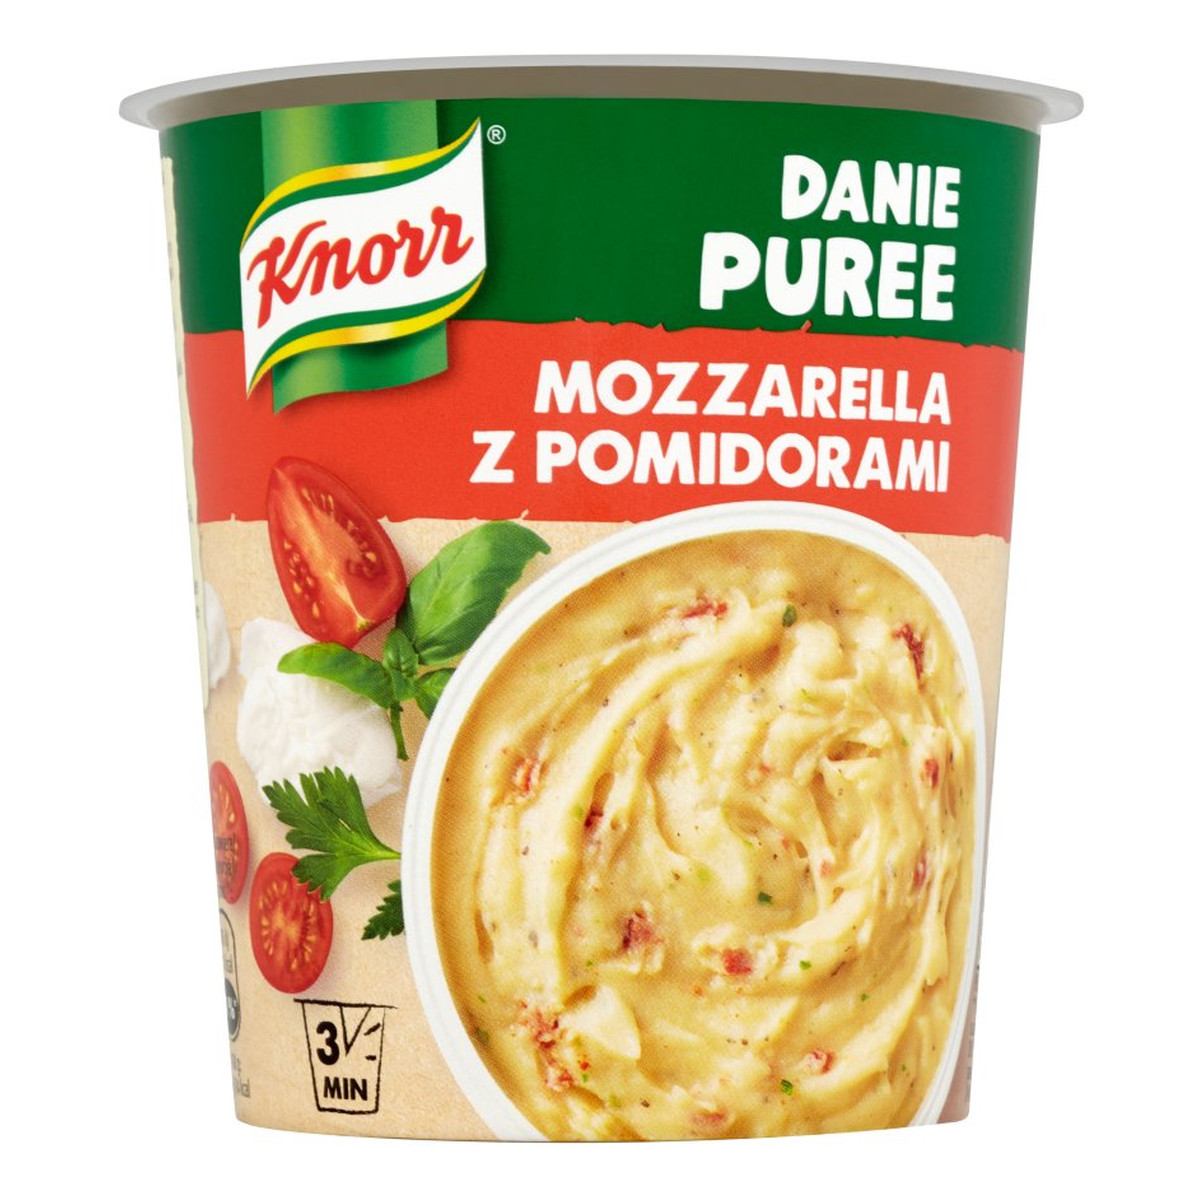 Knorr Gorący Kubek danie puree Mozarella z Pomidorami 47g